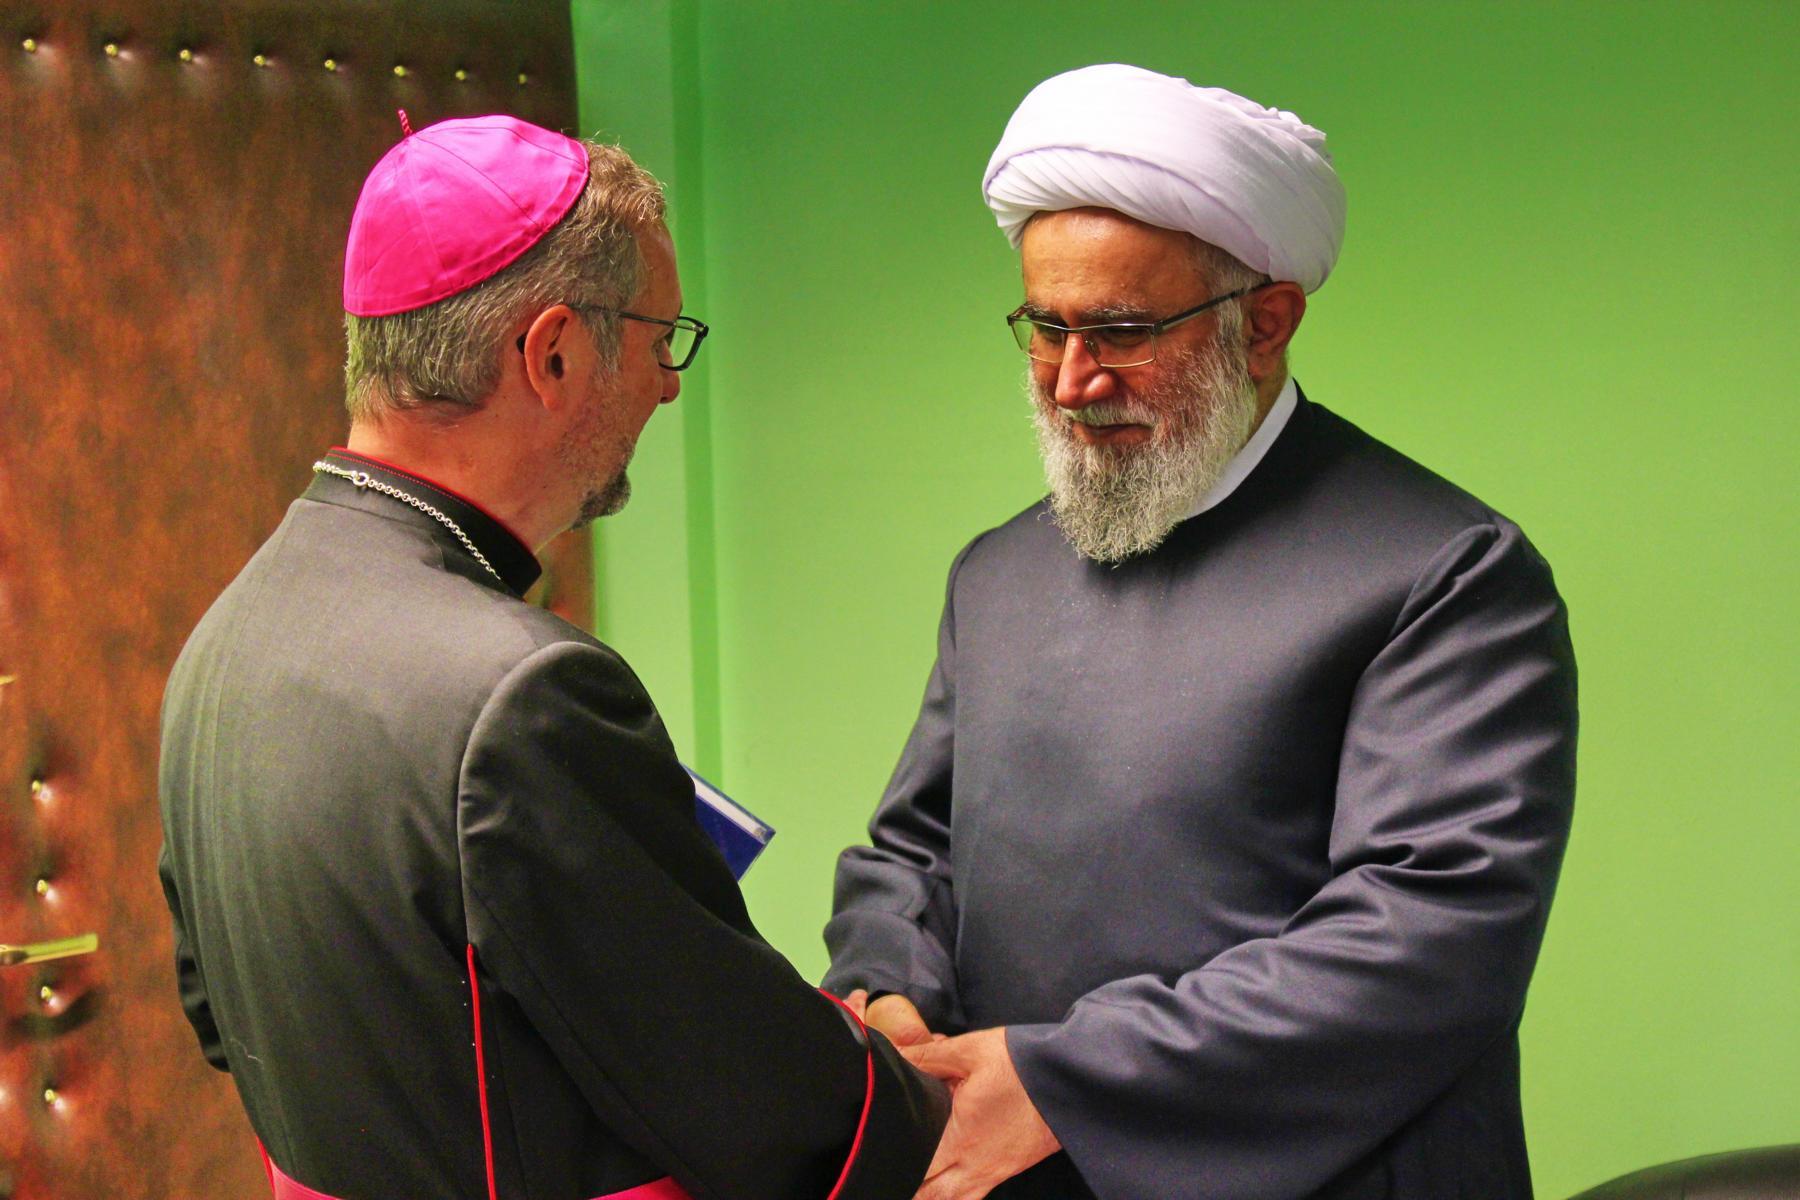 اسقف اعظم در مرکز اسلامی هامبورگ + عکس